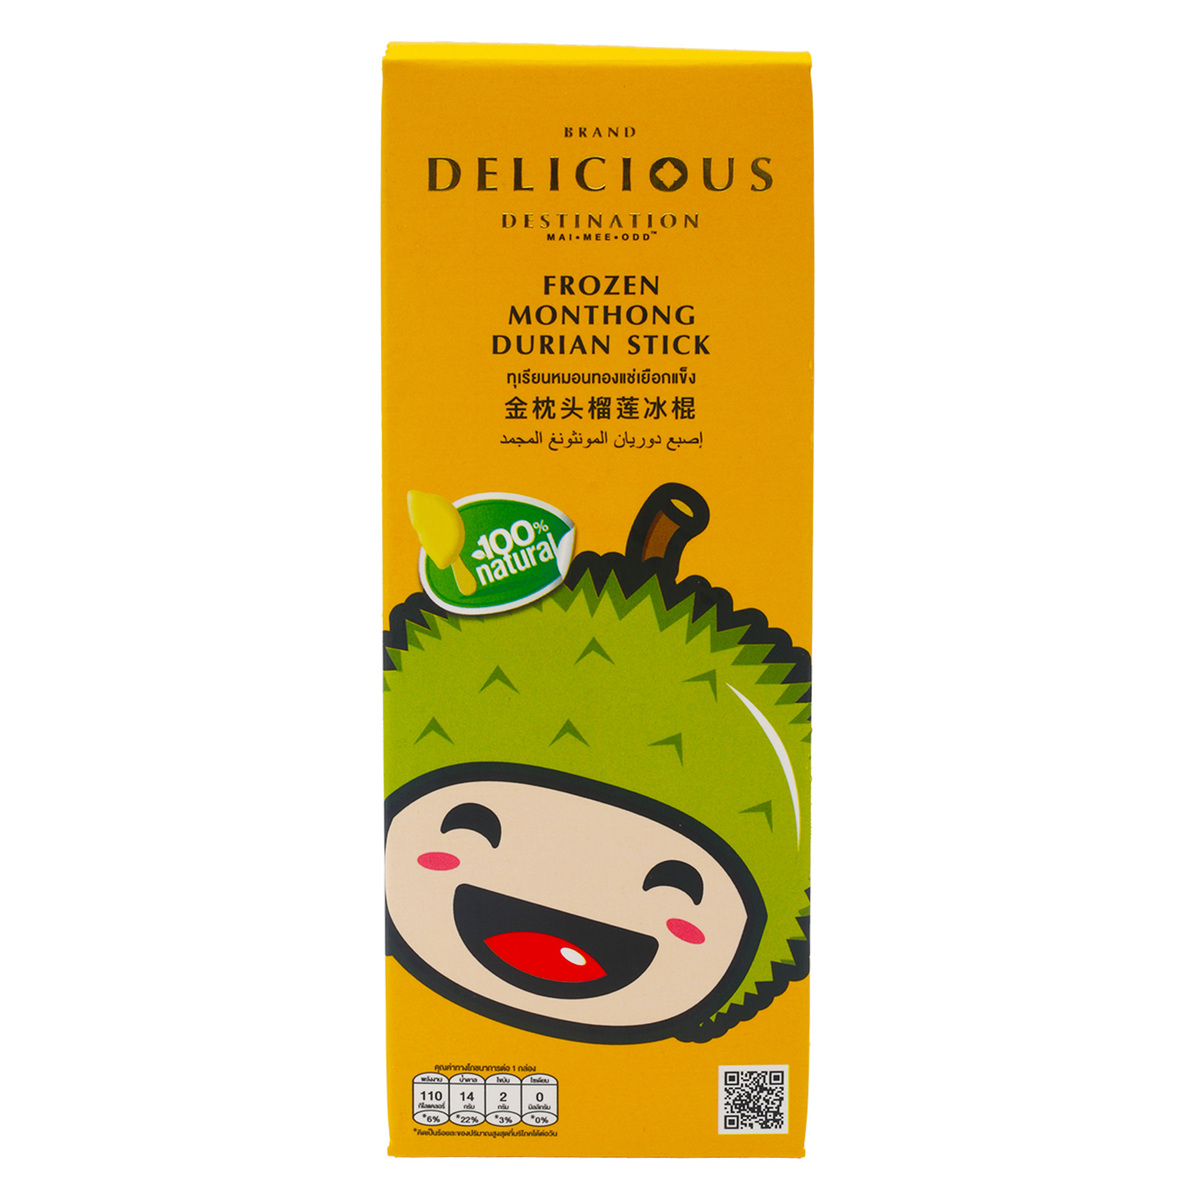 اشتري قم بشراء Delicious Destination Frozen Monthong Durian Stick 80 g Online at Best Price من الموقع - من لولو هايبر ماركت Fruits في الكويت